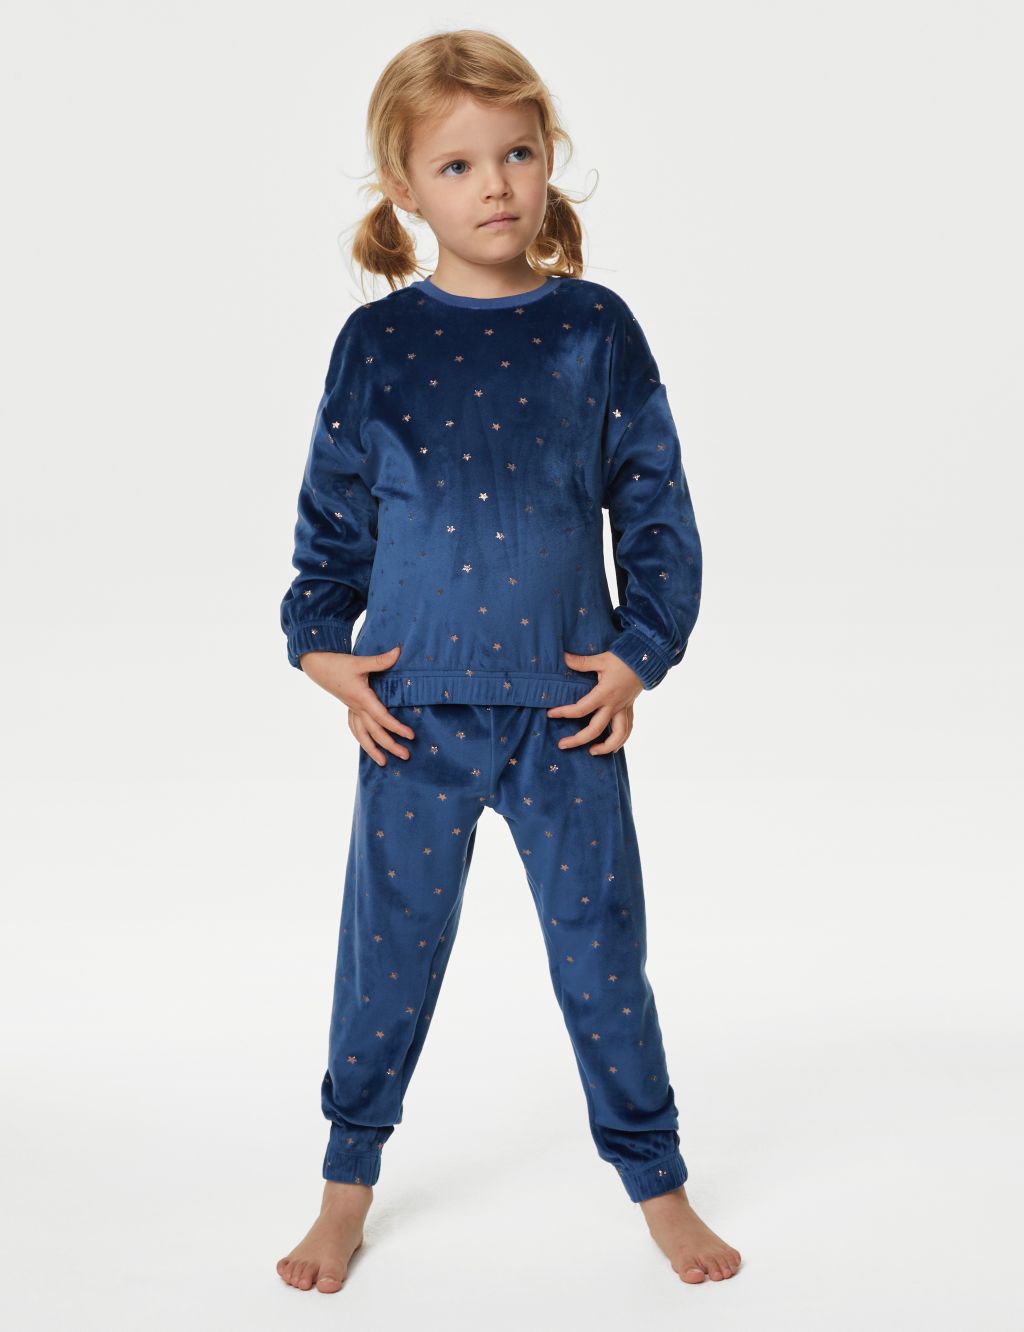 Velour Star Pyjamas (1-8 Yrs) image 1